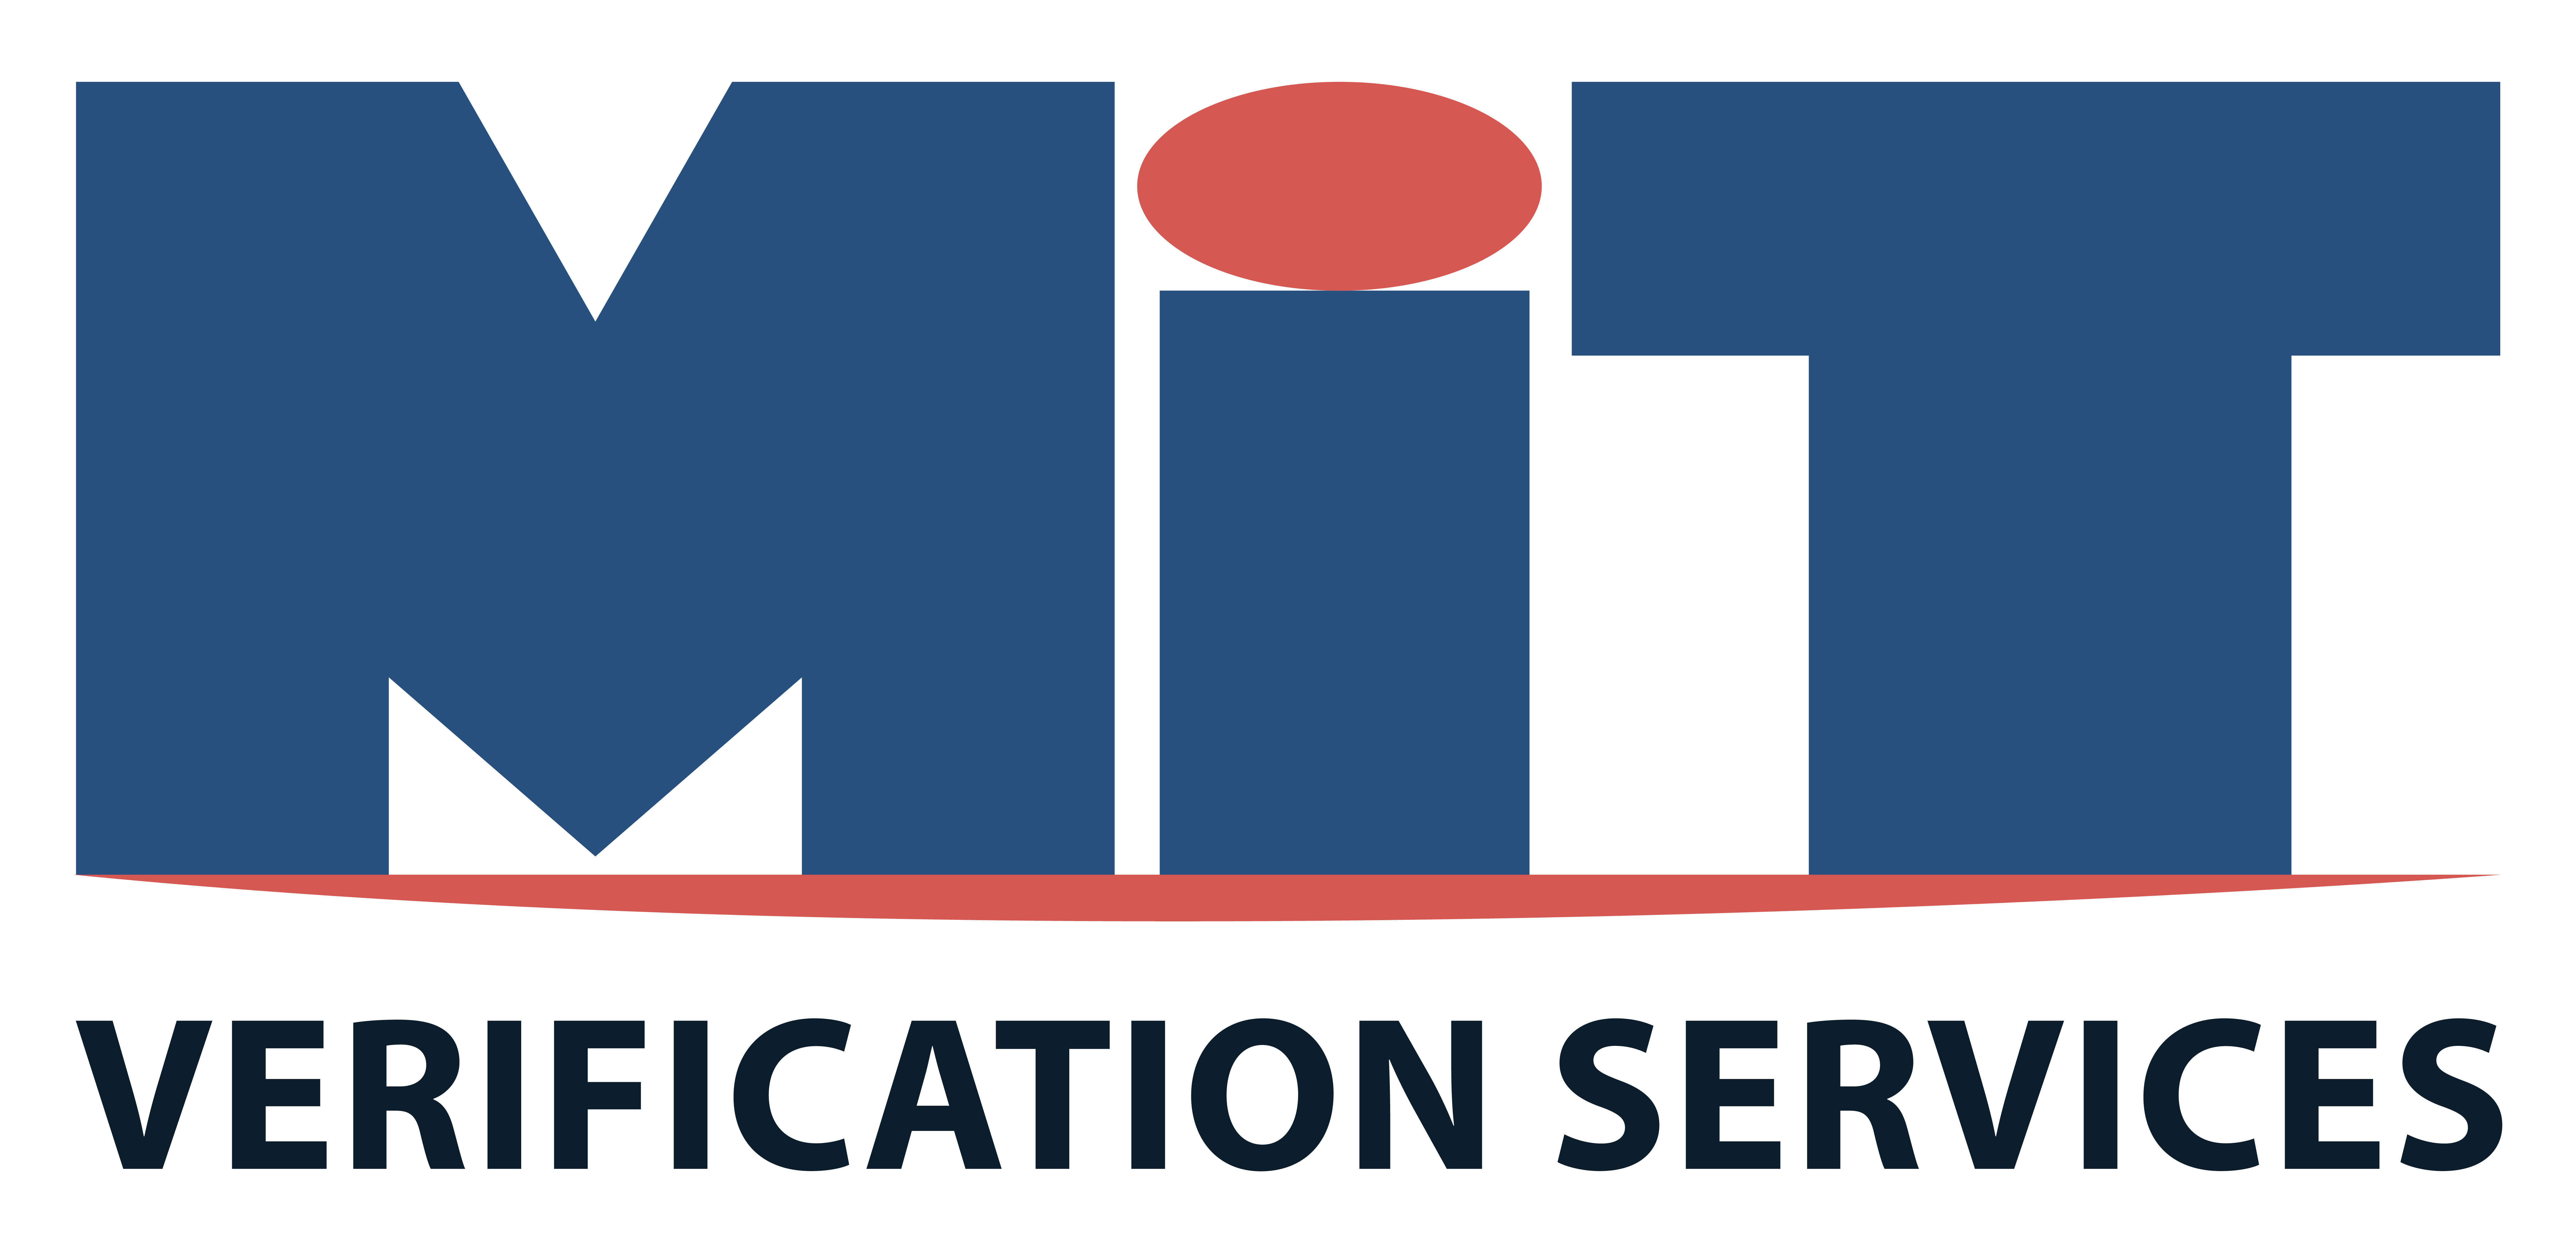 MIT Verification Services